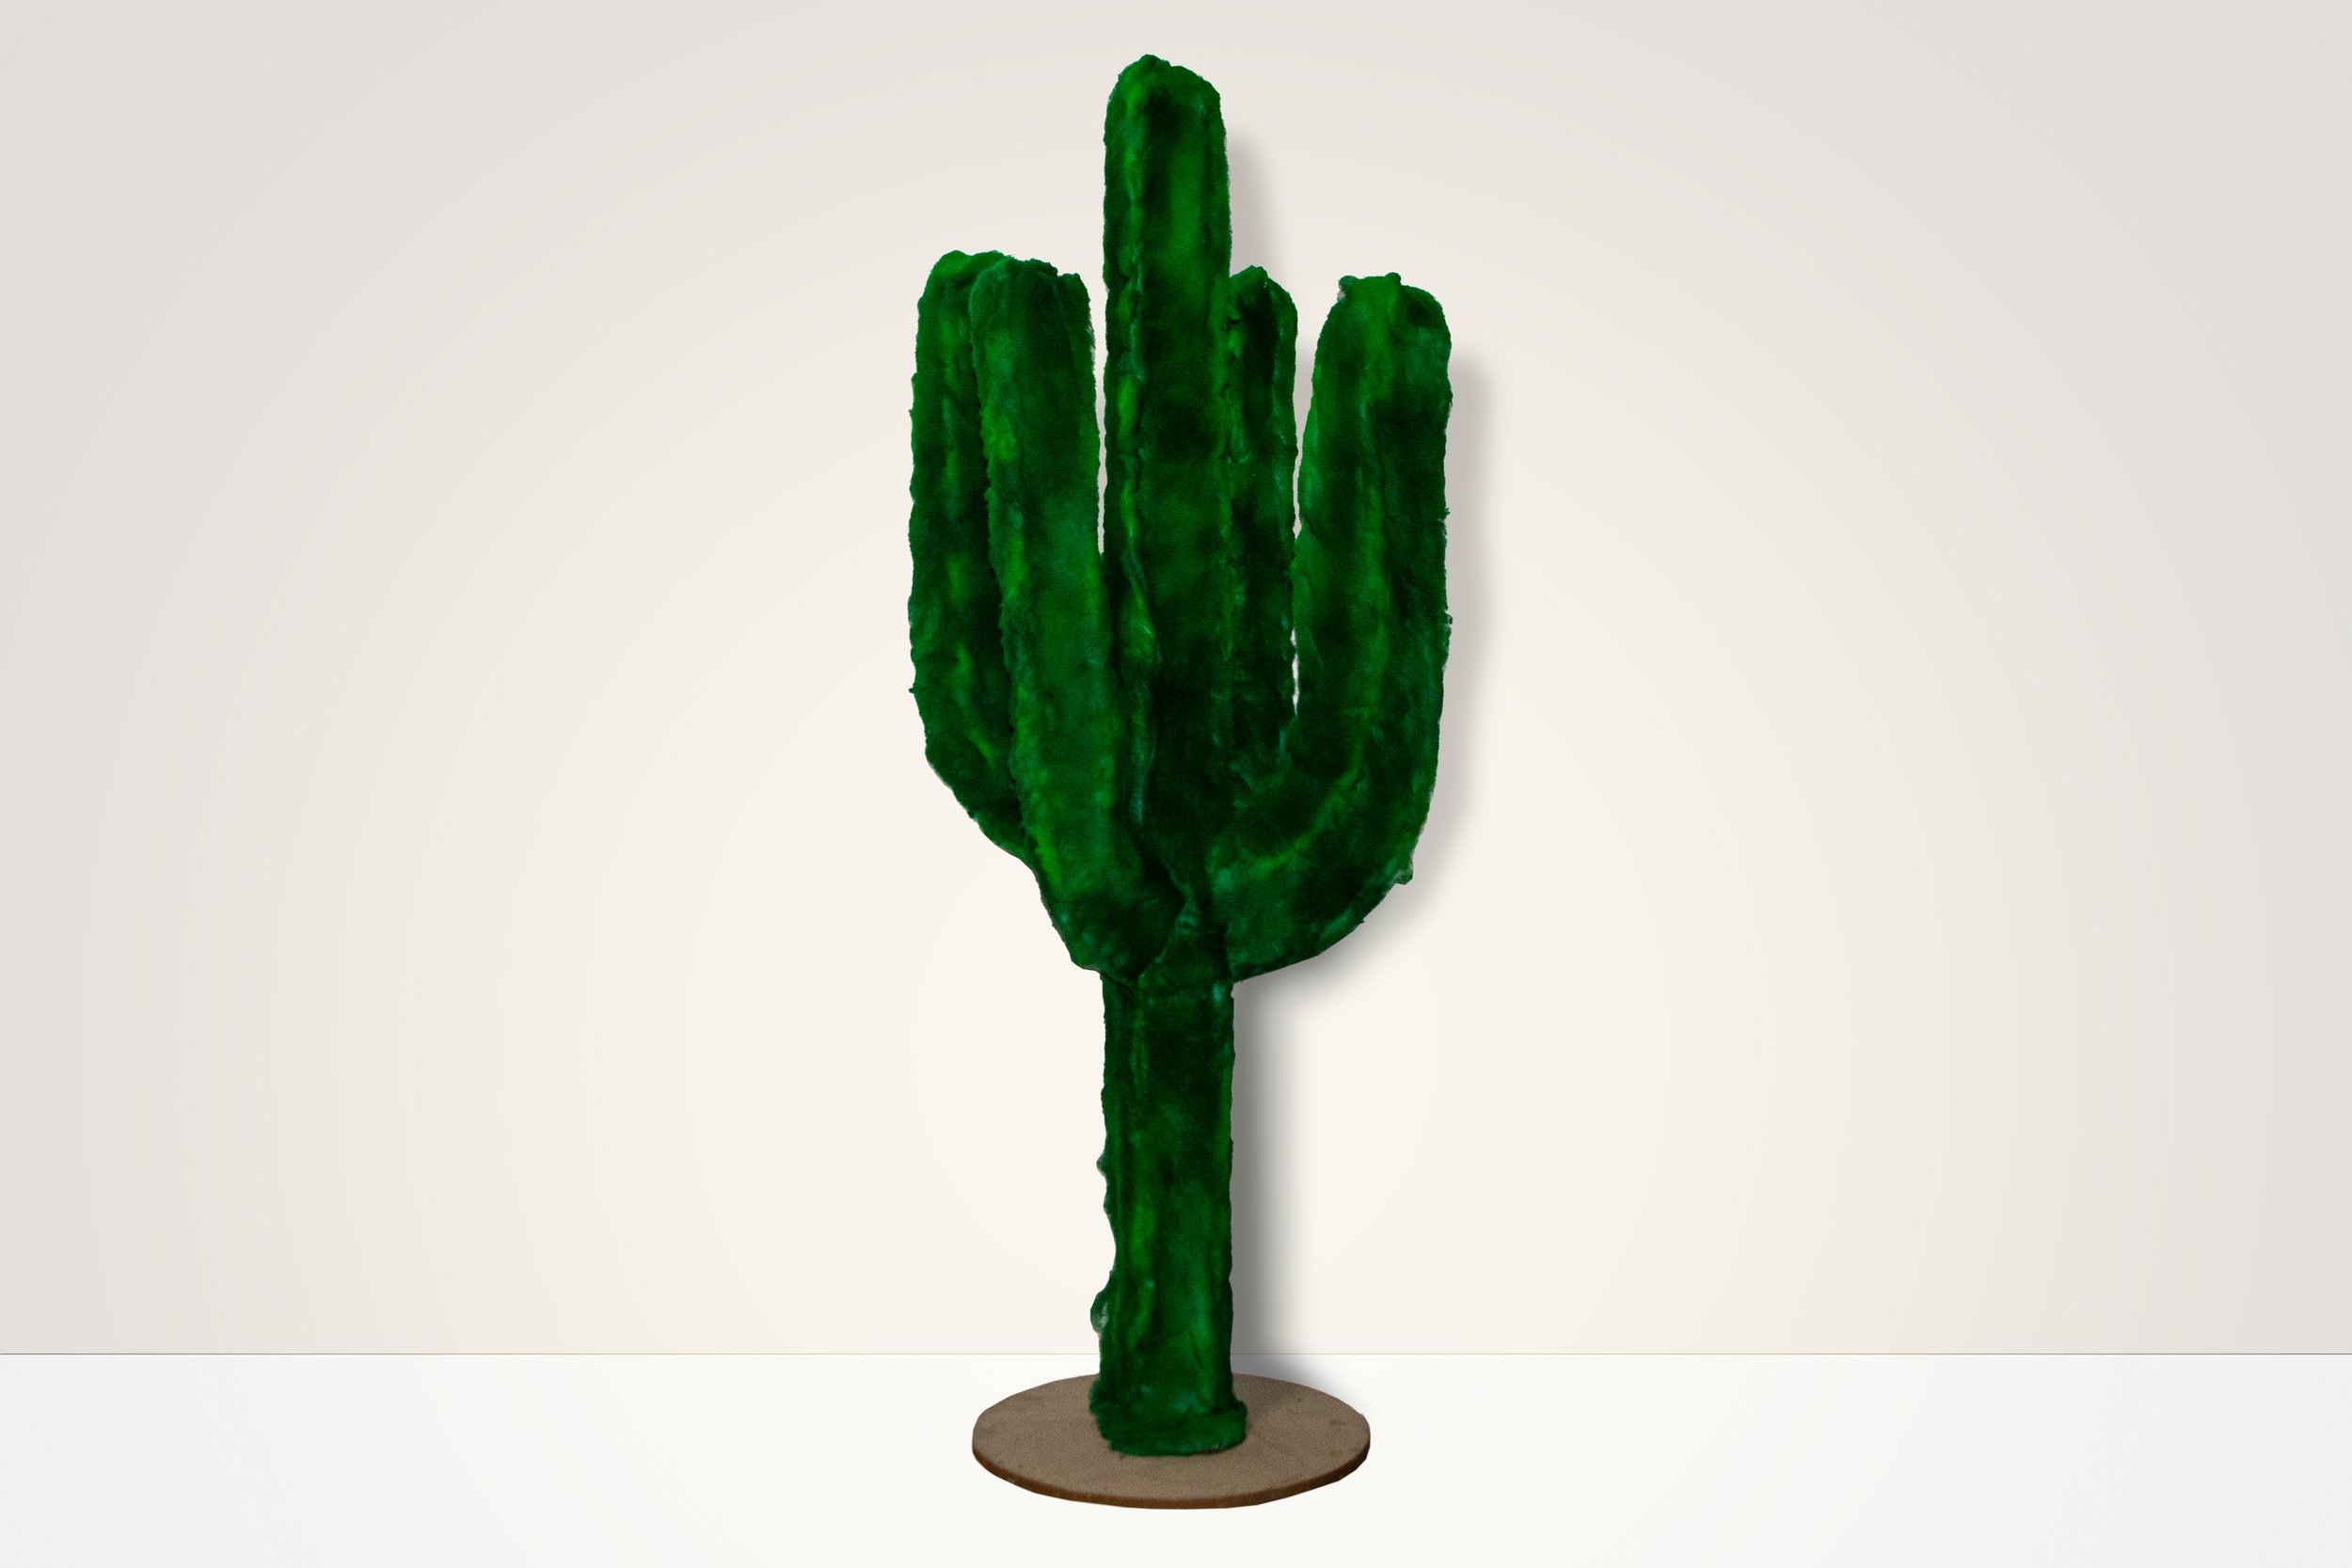 The Fuzzy Cactus